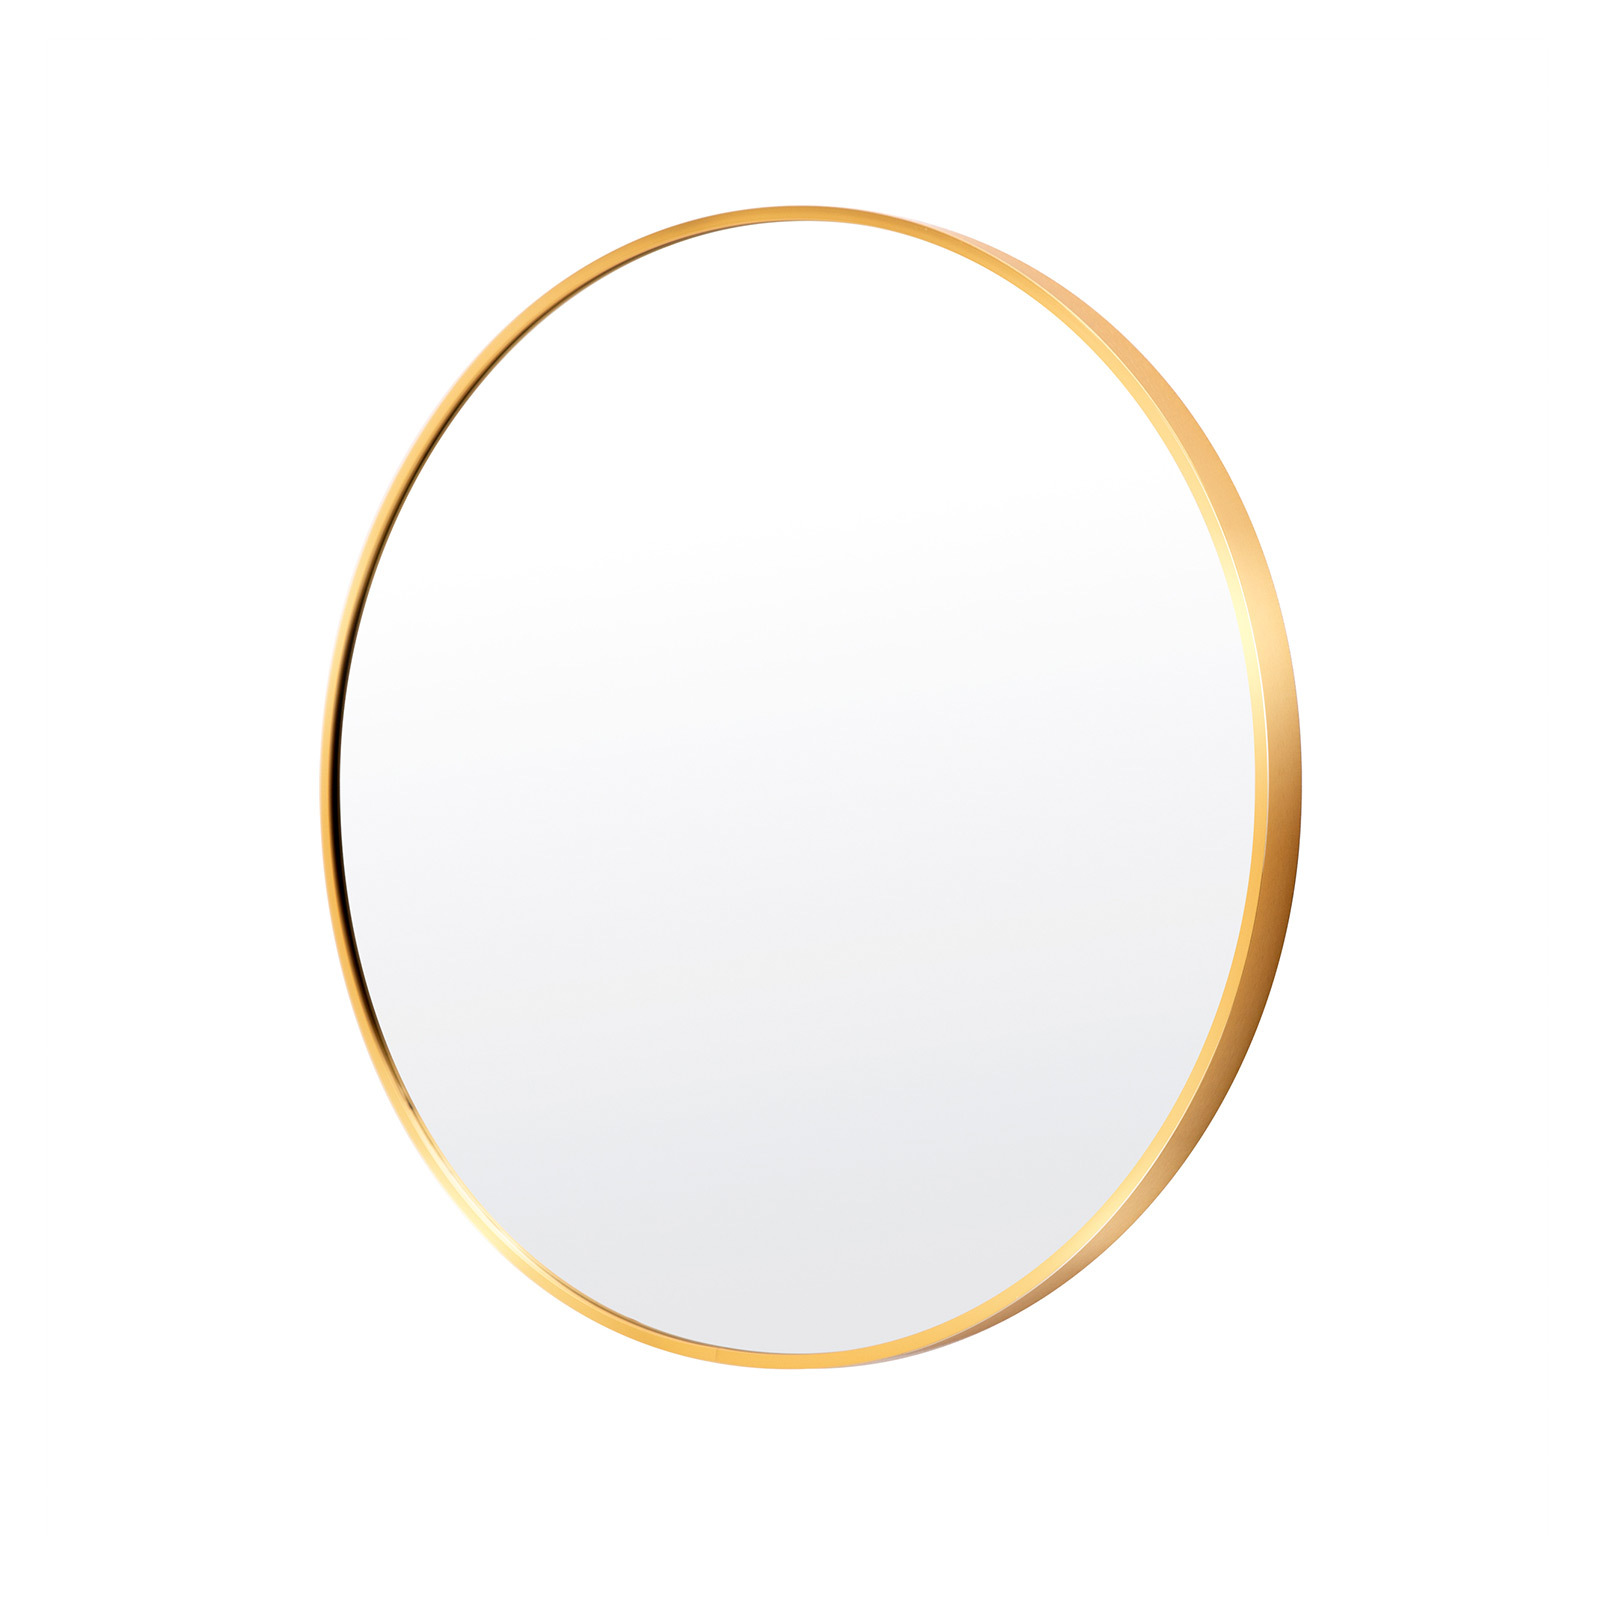 70cm Wall Mirror Round Bathroom - GOLD